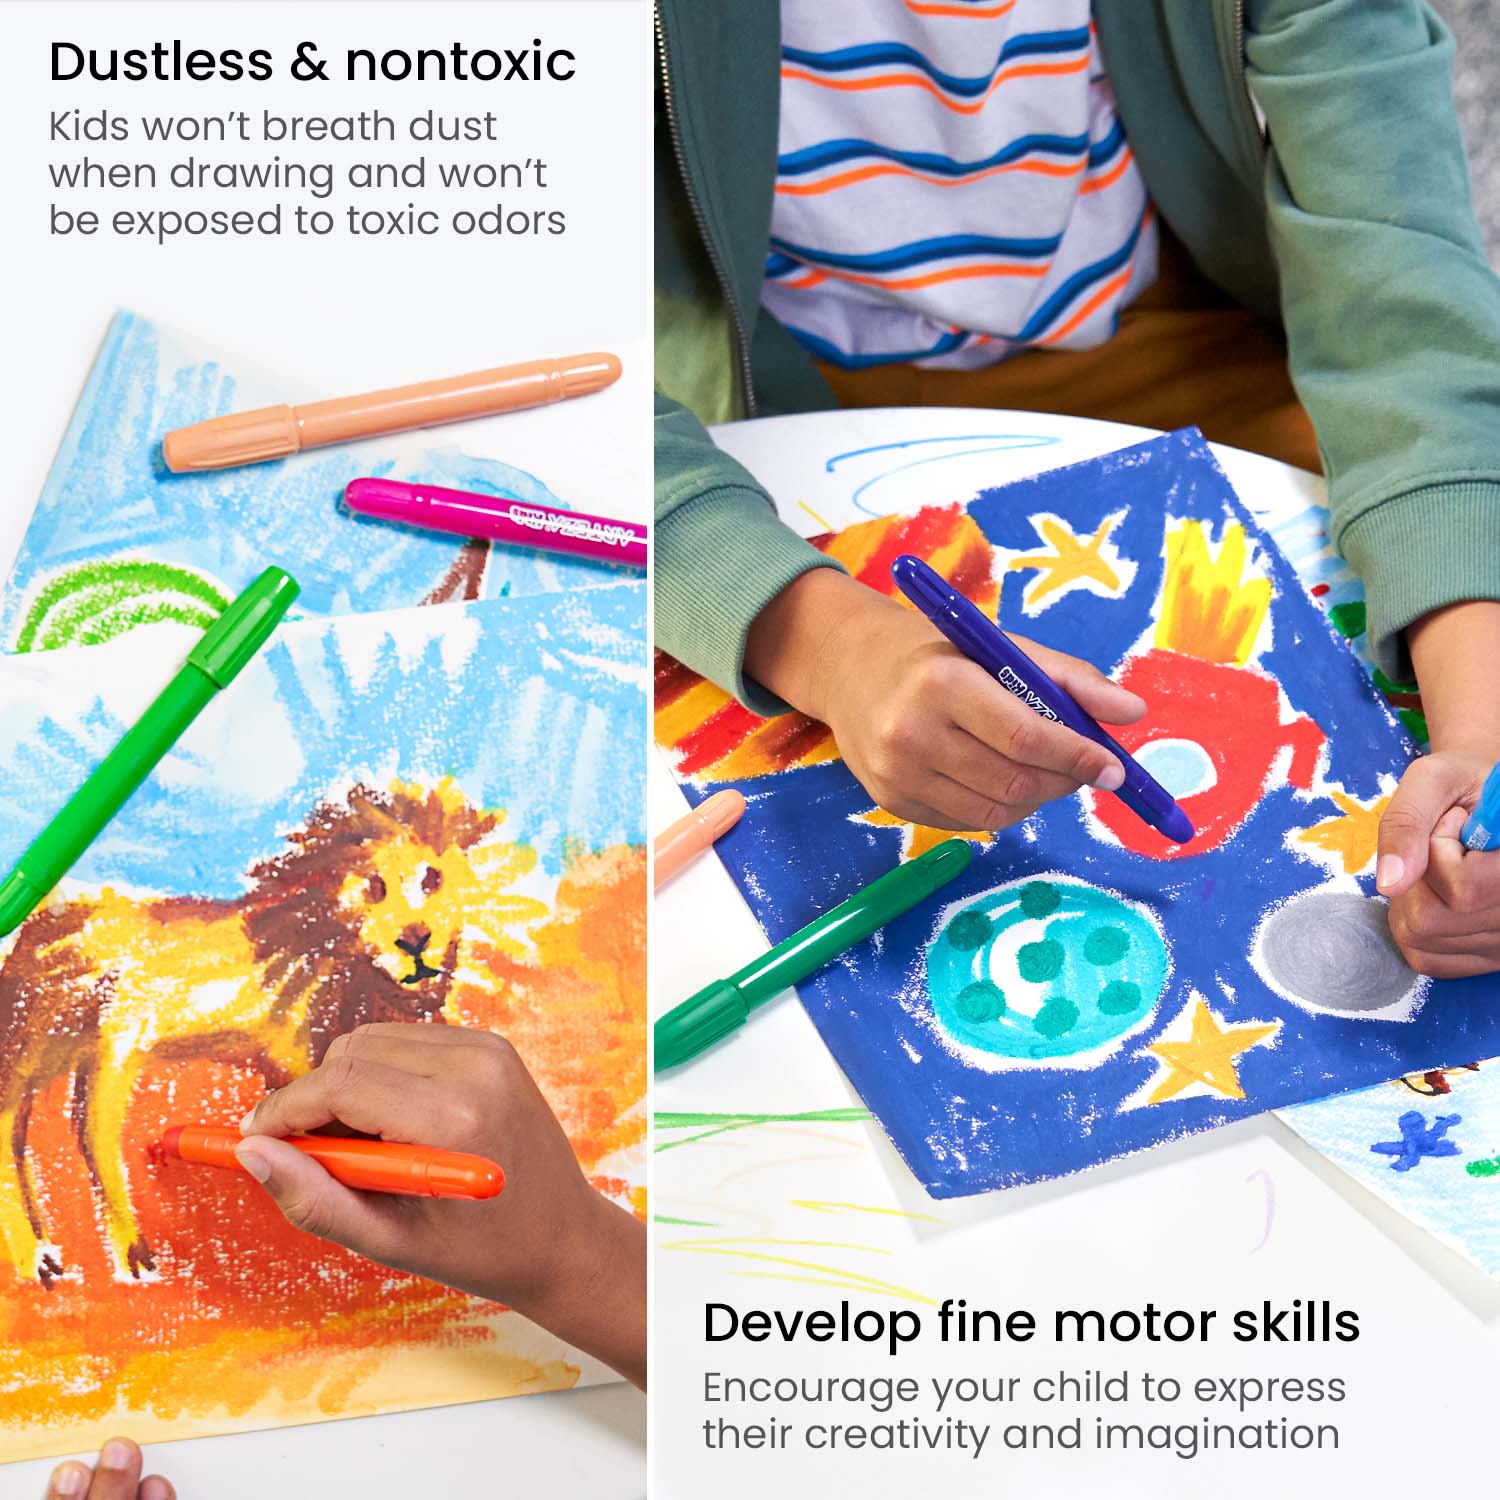  Arteza Kids Crayones para niños pequeños a granel, 216  unidades, 6 paquetes de 36 colores, tamaño regular, lápices de cera vívida,  suministros de arte y regreso a la escuela para actividades